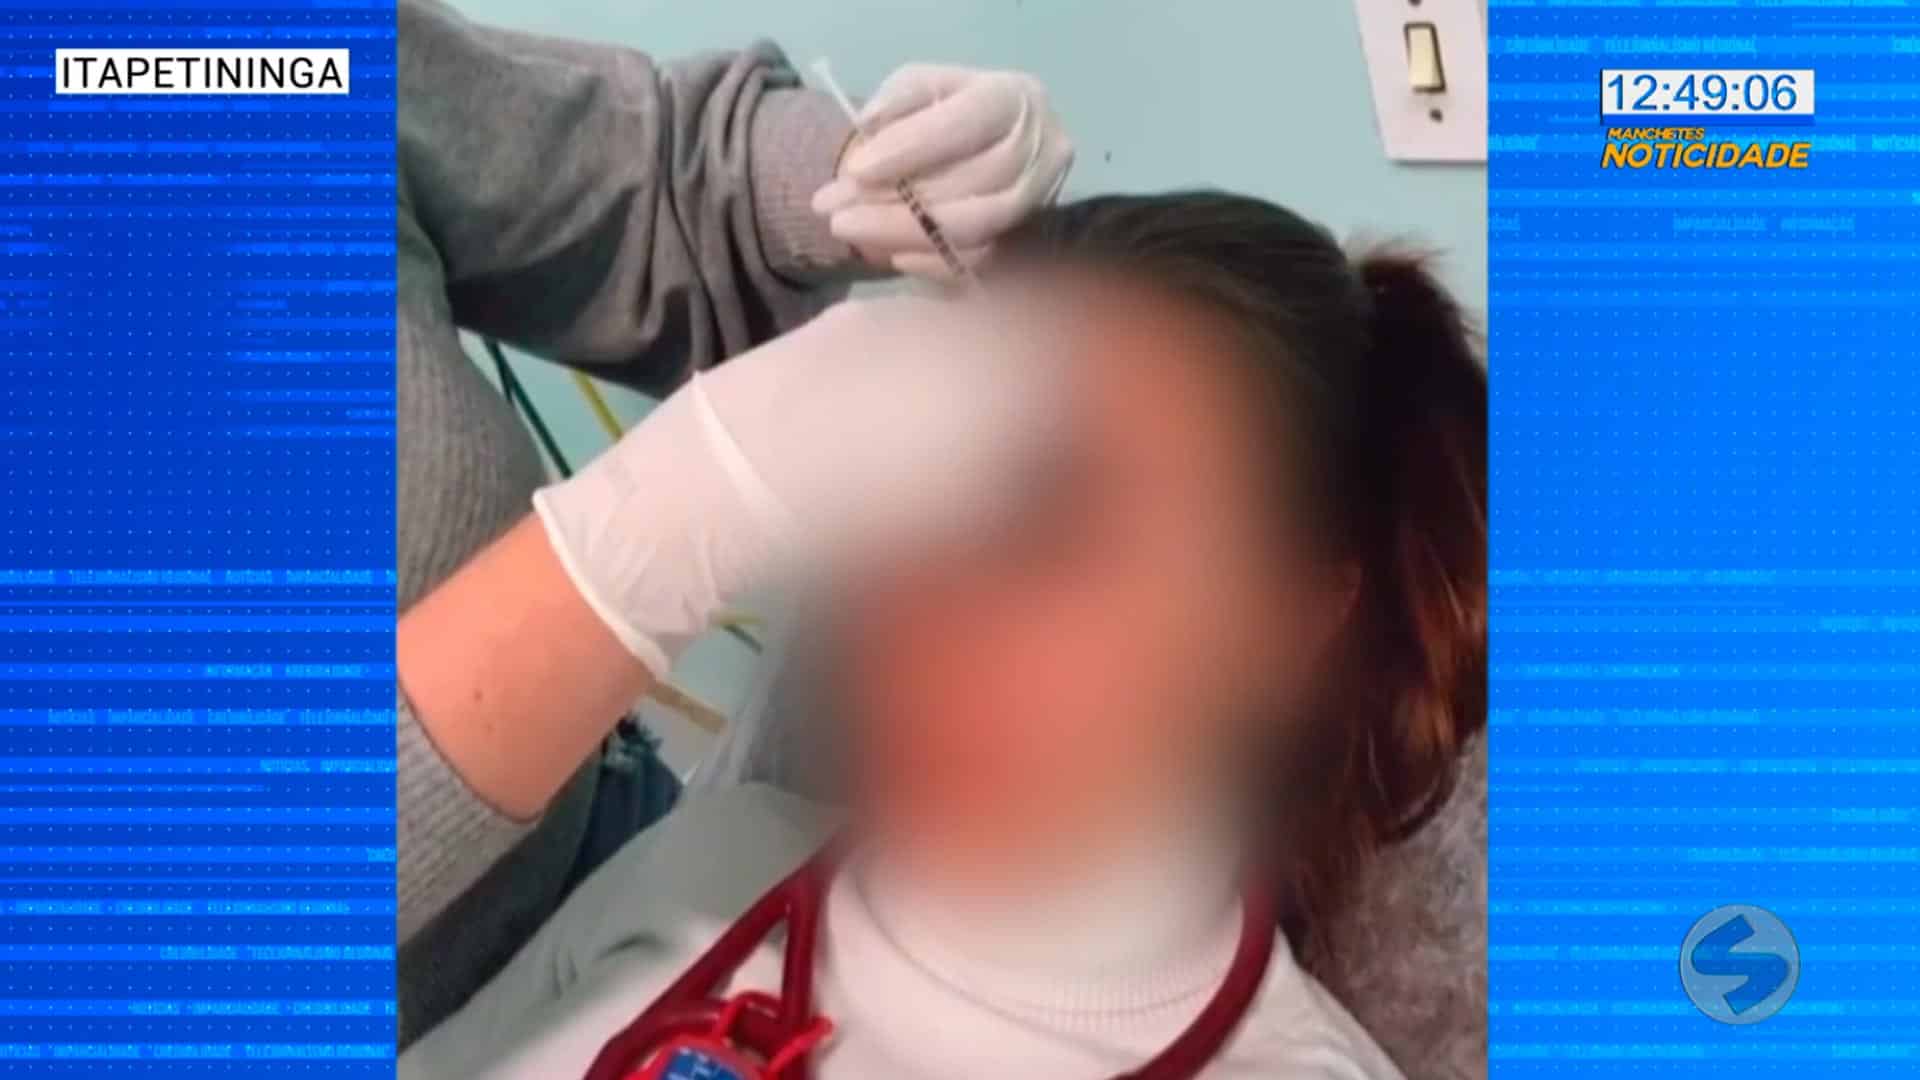 Após aplicação de botox, médicas são desligadas de hospital de Itapetininga